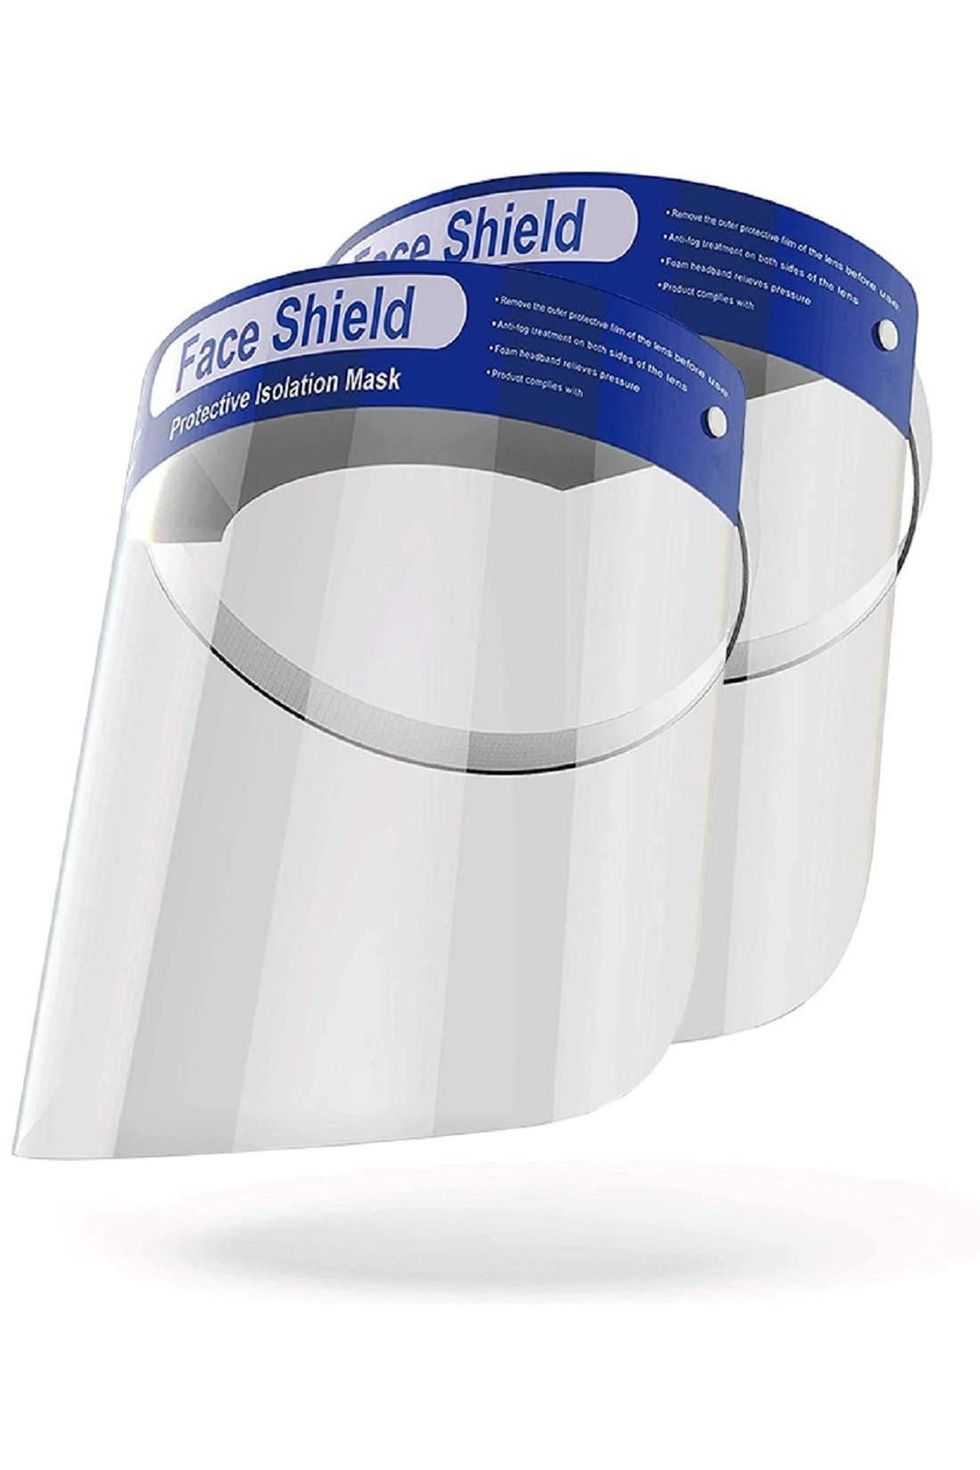 OMK 2 Pcs Reusable Face Shields